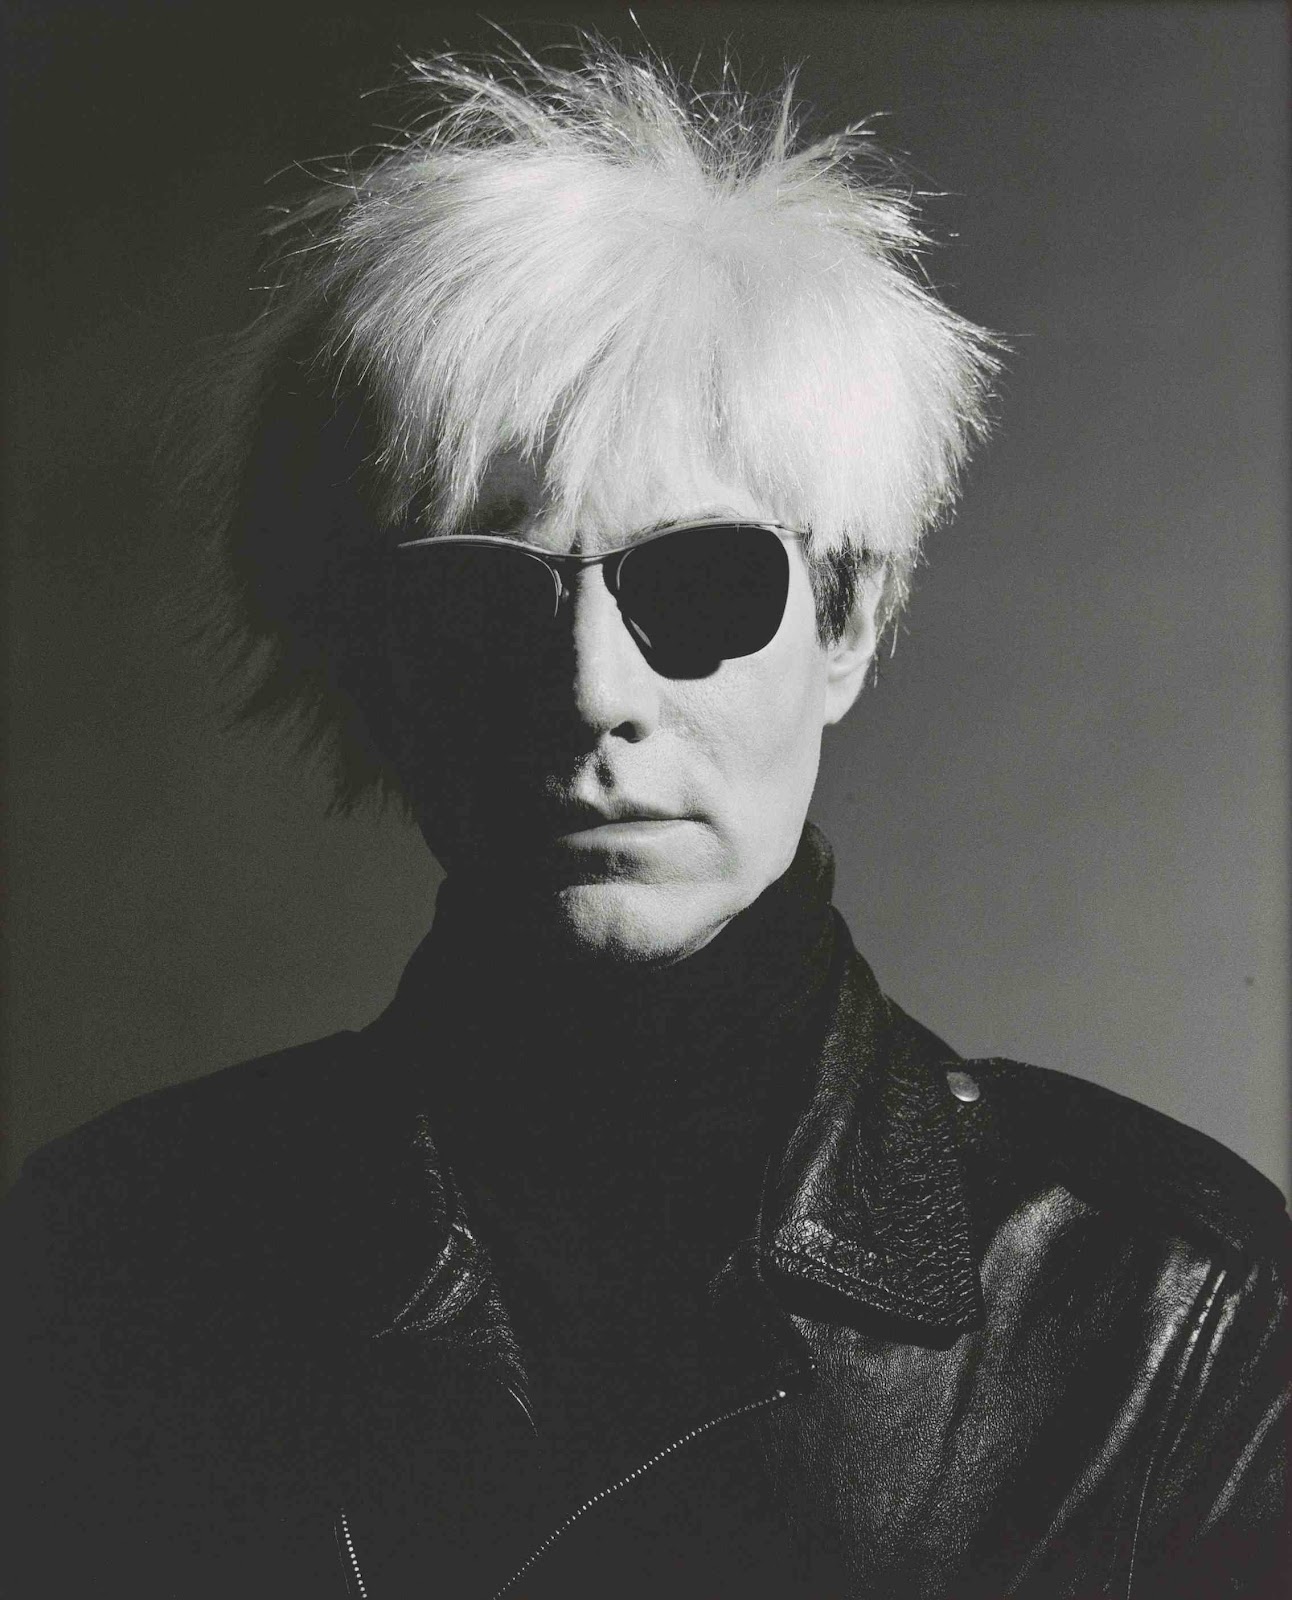 https://blogger.googleusercontent.com/img/b/R29vZ2xl/AVvXsEgxT3JB5JGfeRZI2Q-KyQ0bYFLozSKG3ZsyrVUC3WW2sQiBy3EWxH1nGzZFfNftBMn9iywJoOnFlKRpWTEwGl0UxQ8BTZ06UW9QZSKjf1LUFTq3kkP4NfiDpcTHtqtSZHDZofXIYKOcbgU/s1600/Gorman-Andy-Warhol.jpg